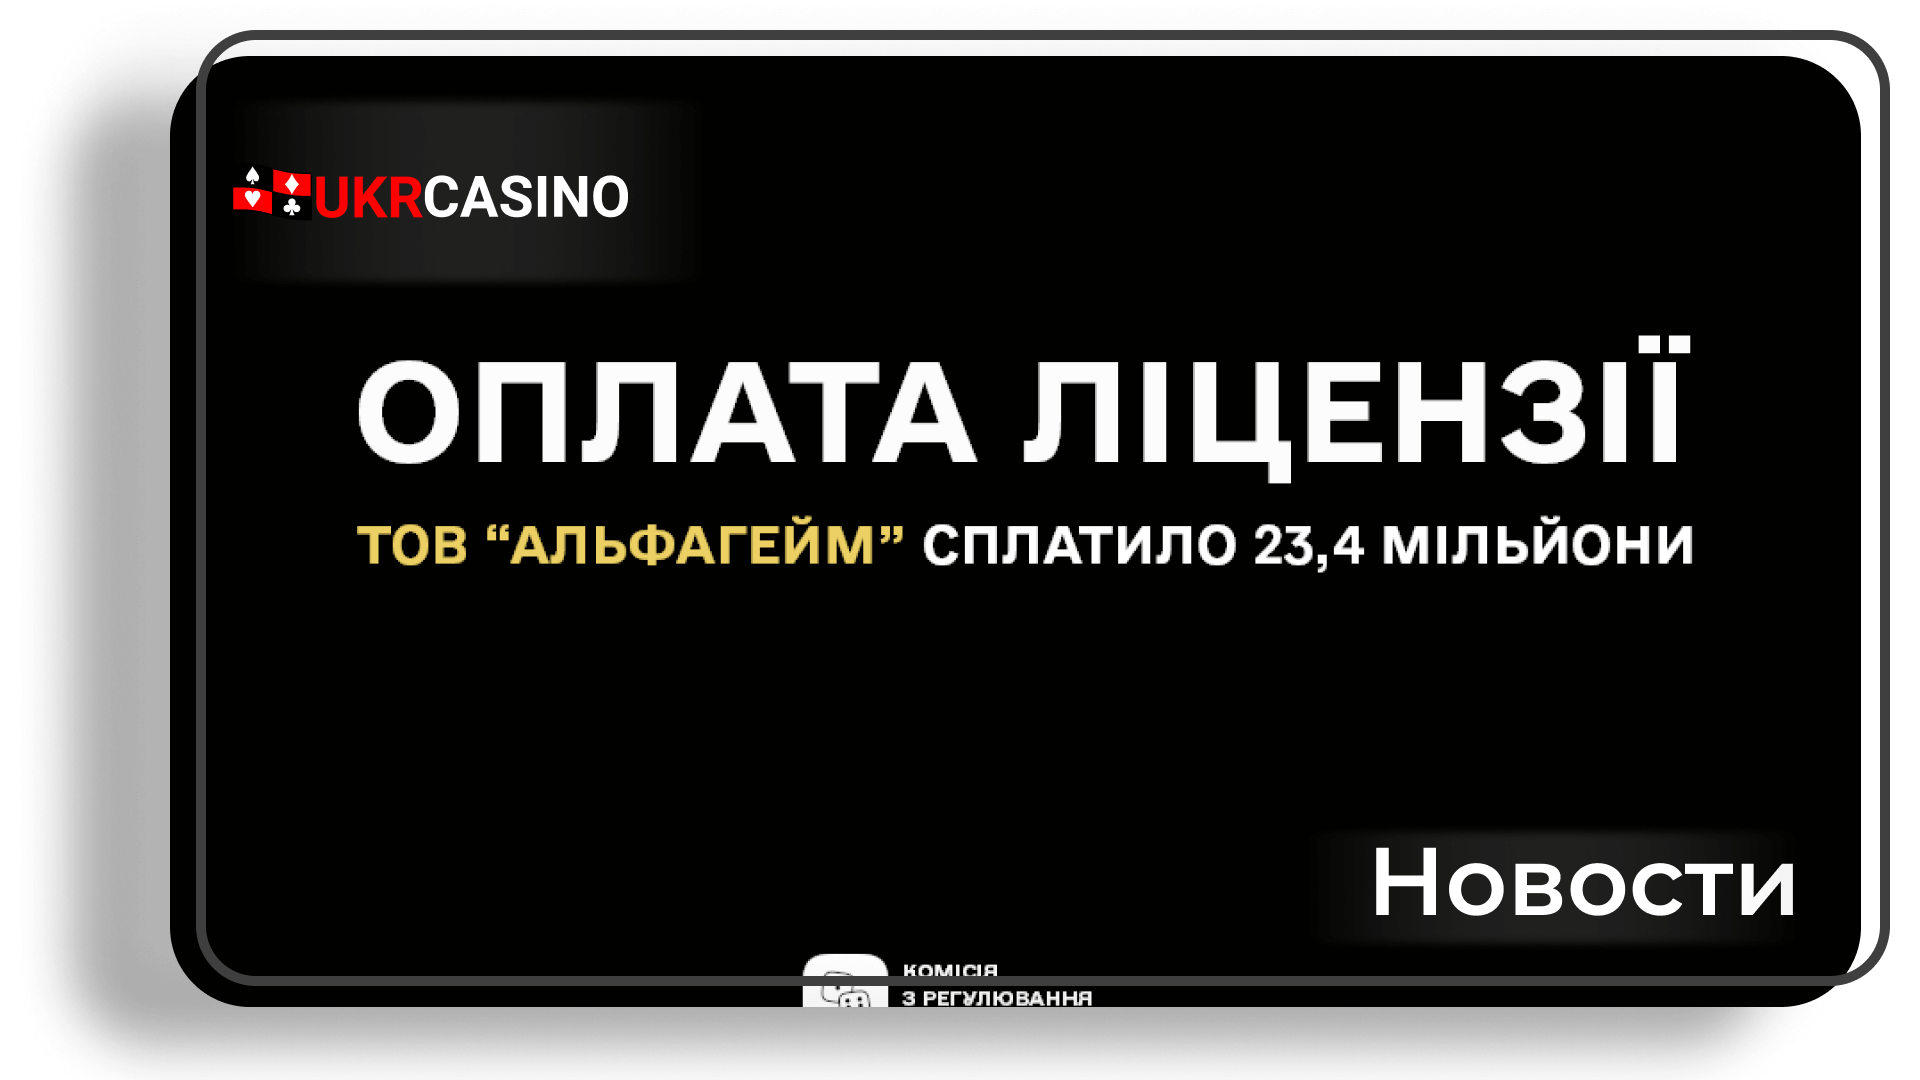 Ещё одно азартное заведение онлайн выплатило 23,4 миллиона гривен в бюджет Украины